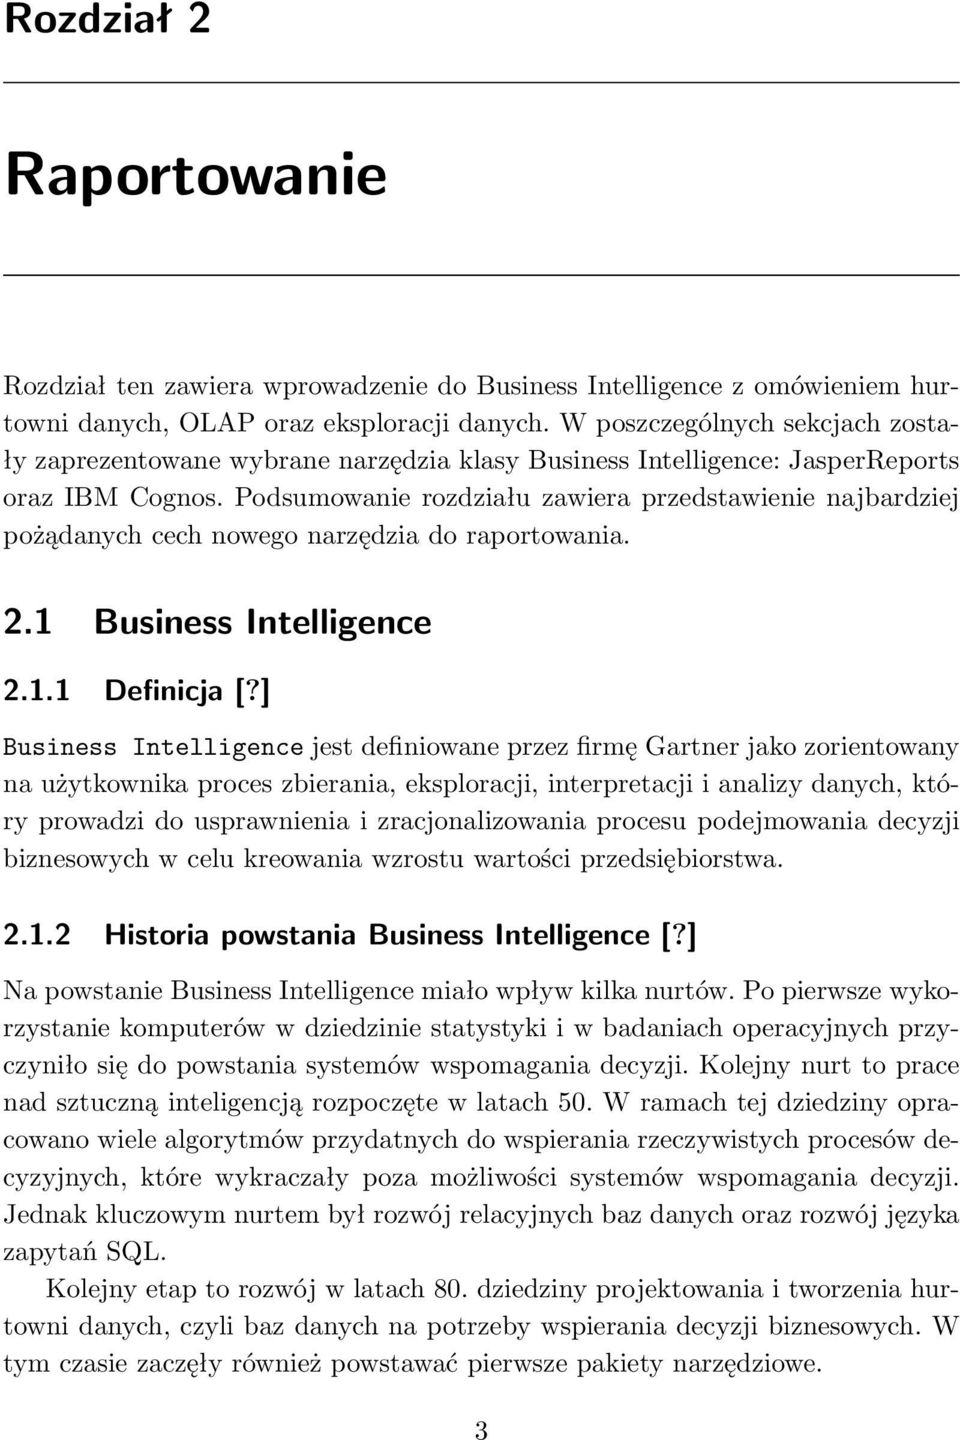 Podsumowanie rozdziału zawiera przedstawienie najbardziej pożądanych cech nowego narzędzia do raportowania. 2.1 Business Intelligence 2.1.1 Definicja [?